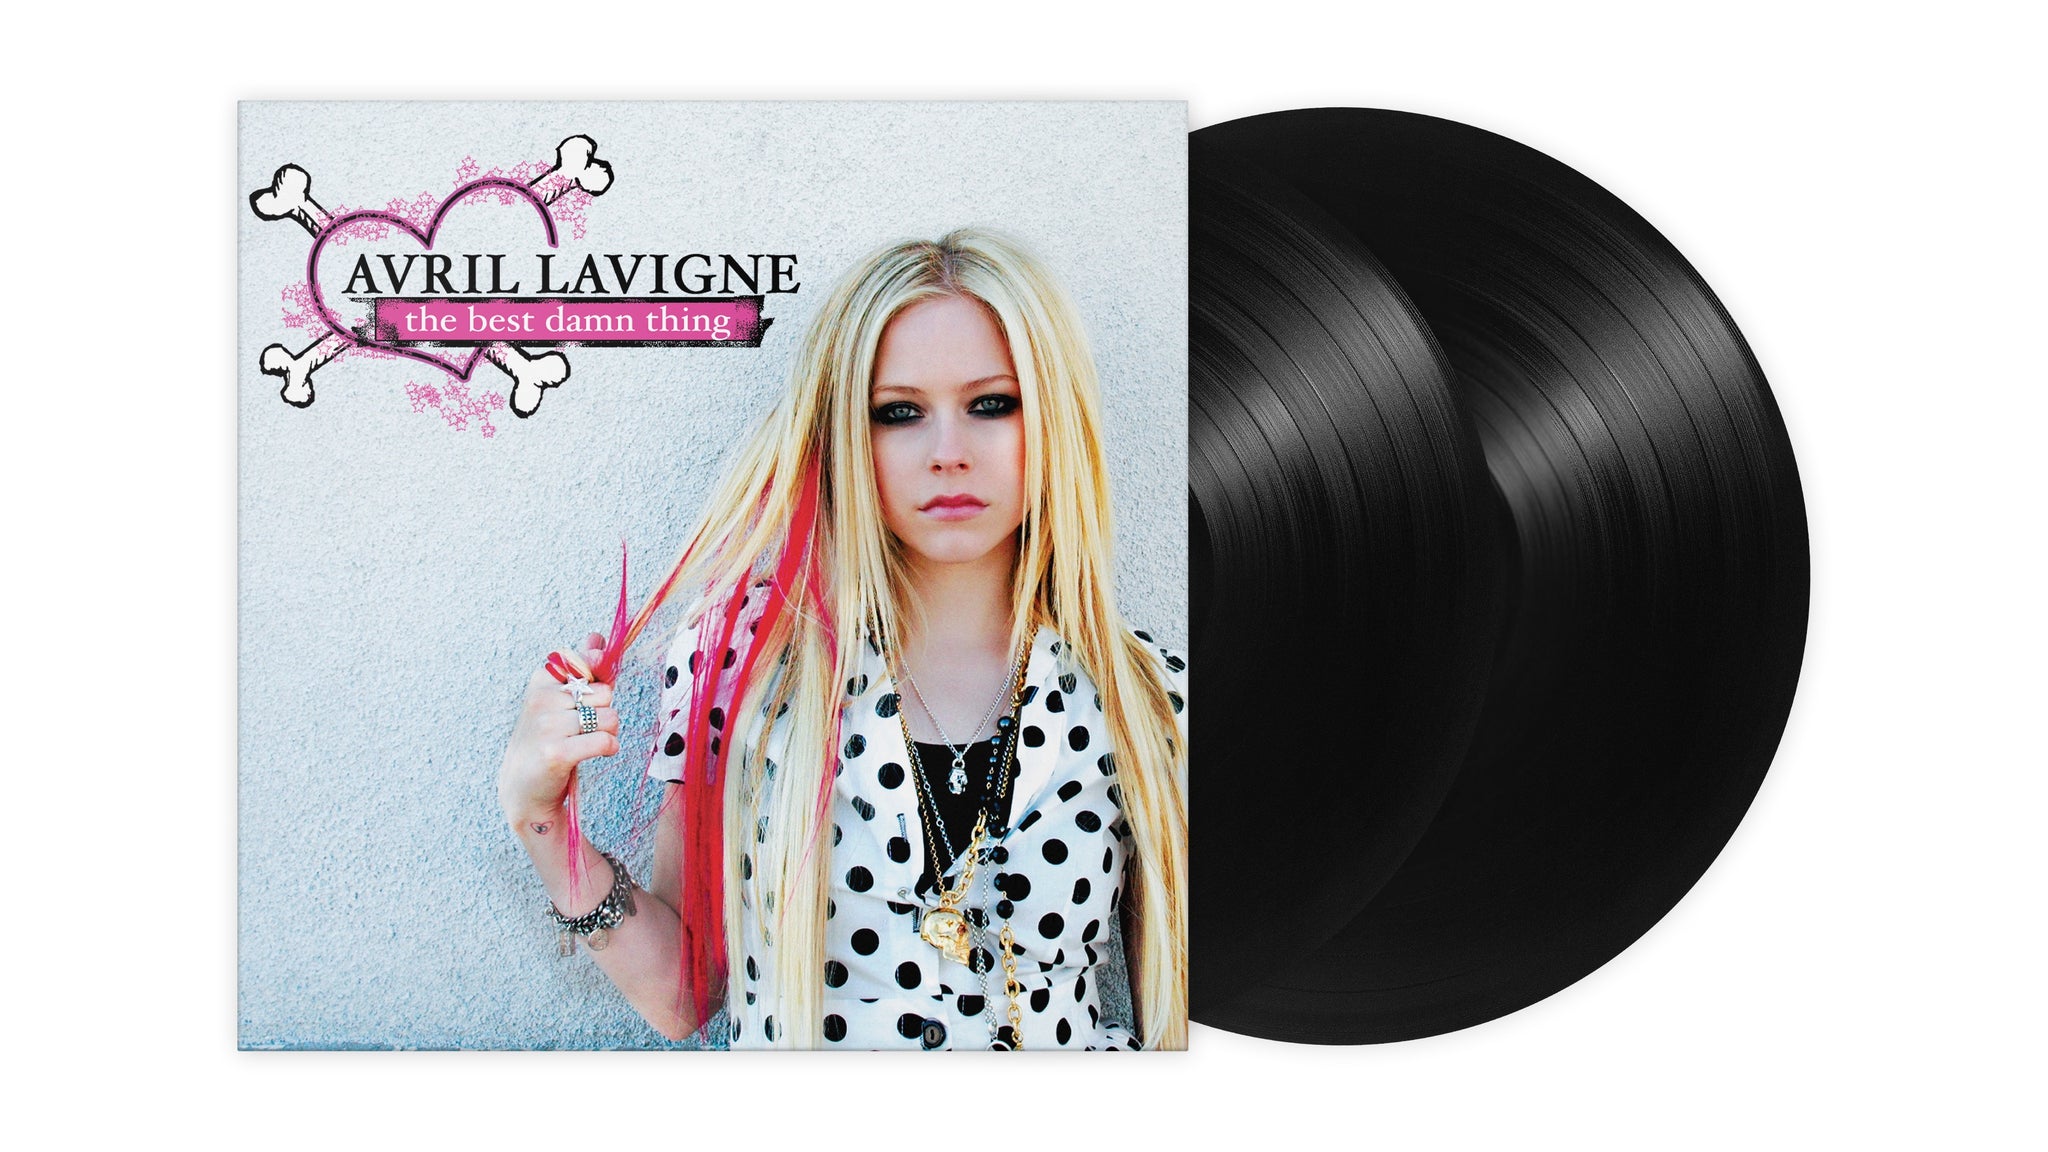 Avril Lavigne "The Best Damn Thing" 2x12" Black Vinyl - PRE-ORDER